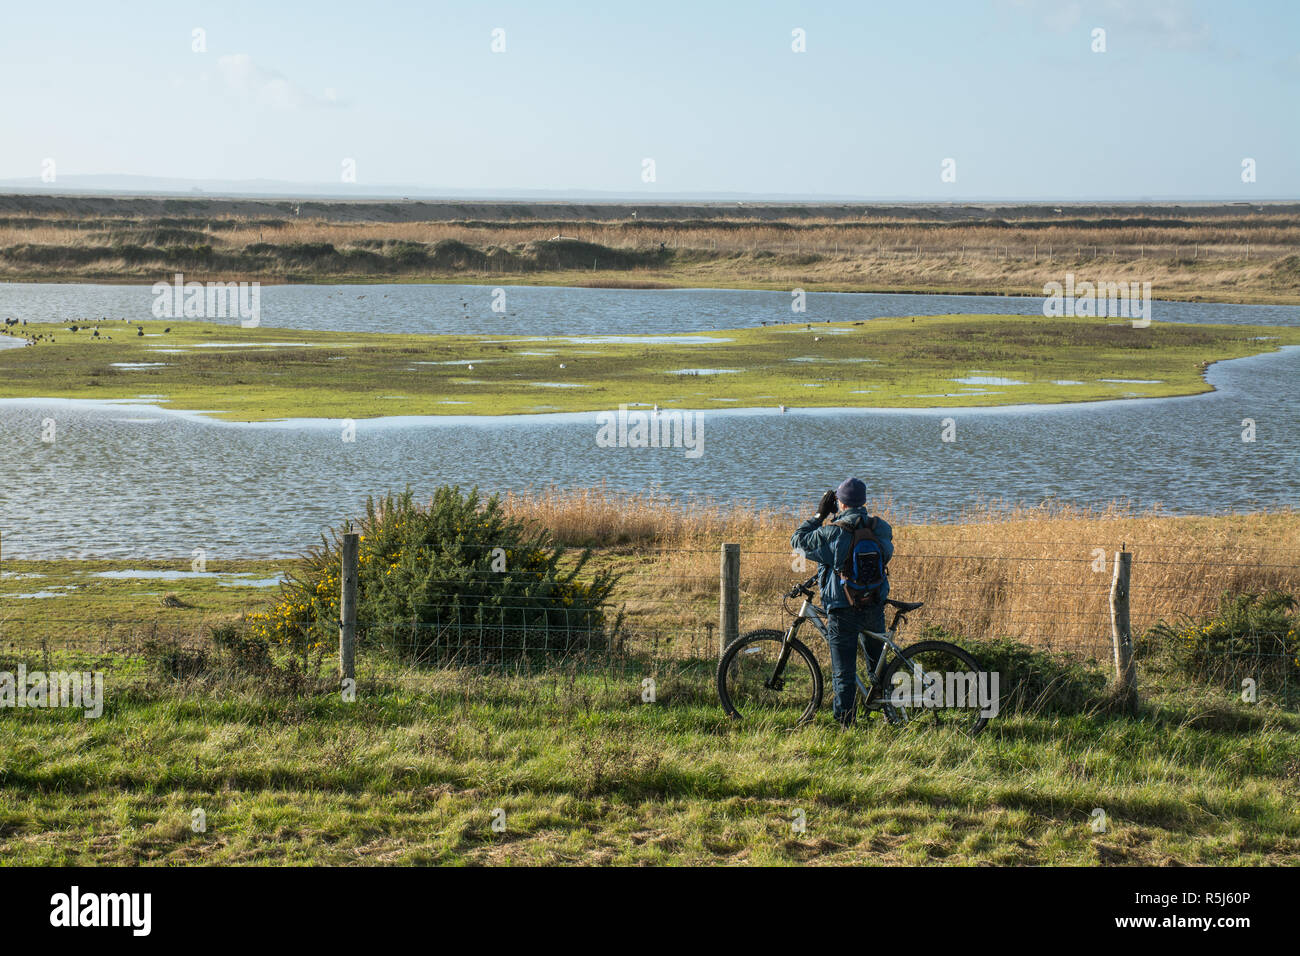 RSPB Medmerry Reserva Natural por la costa, West Sussex, Reino Unido. Birdwatcher sobre una bicicleta mirando a los pájaros en las piscinas en zancos a través de unos prismáticos Foto de stock